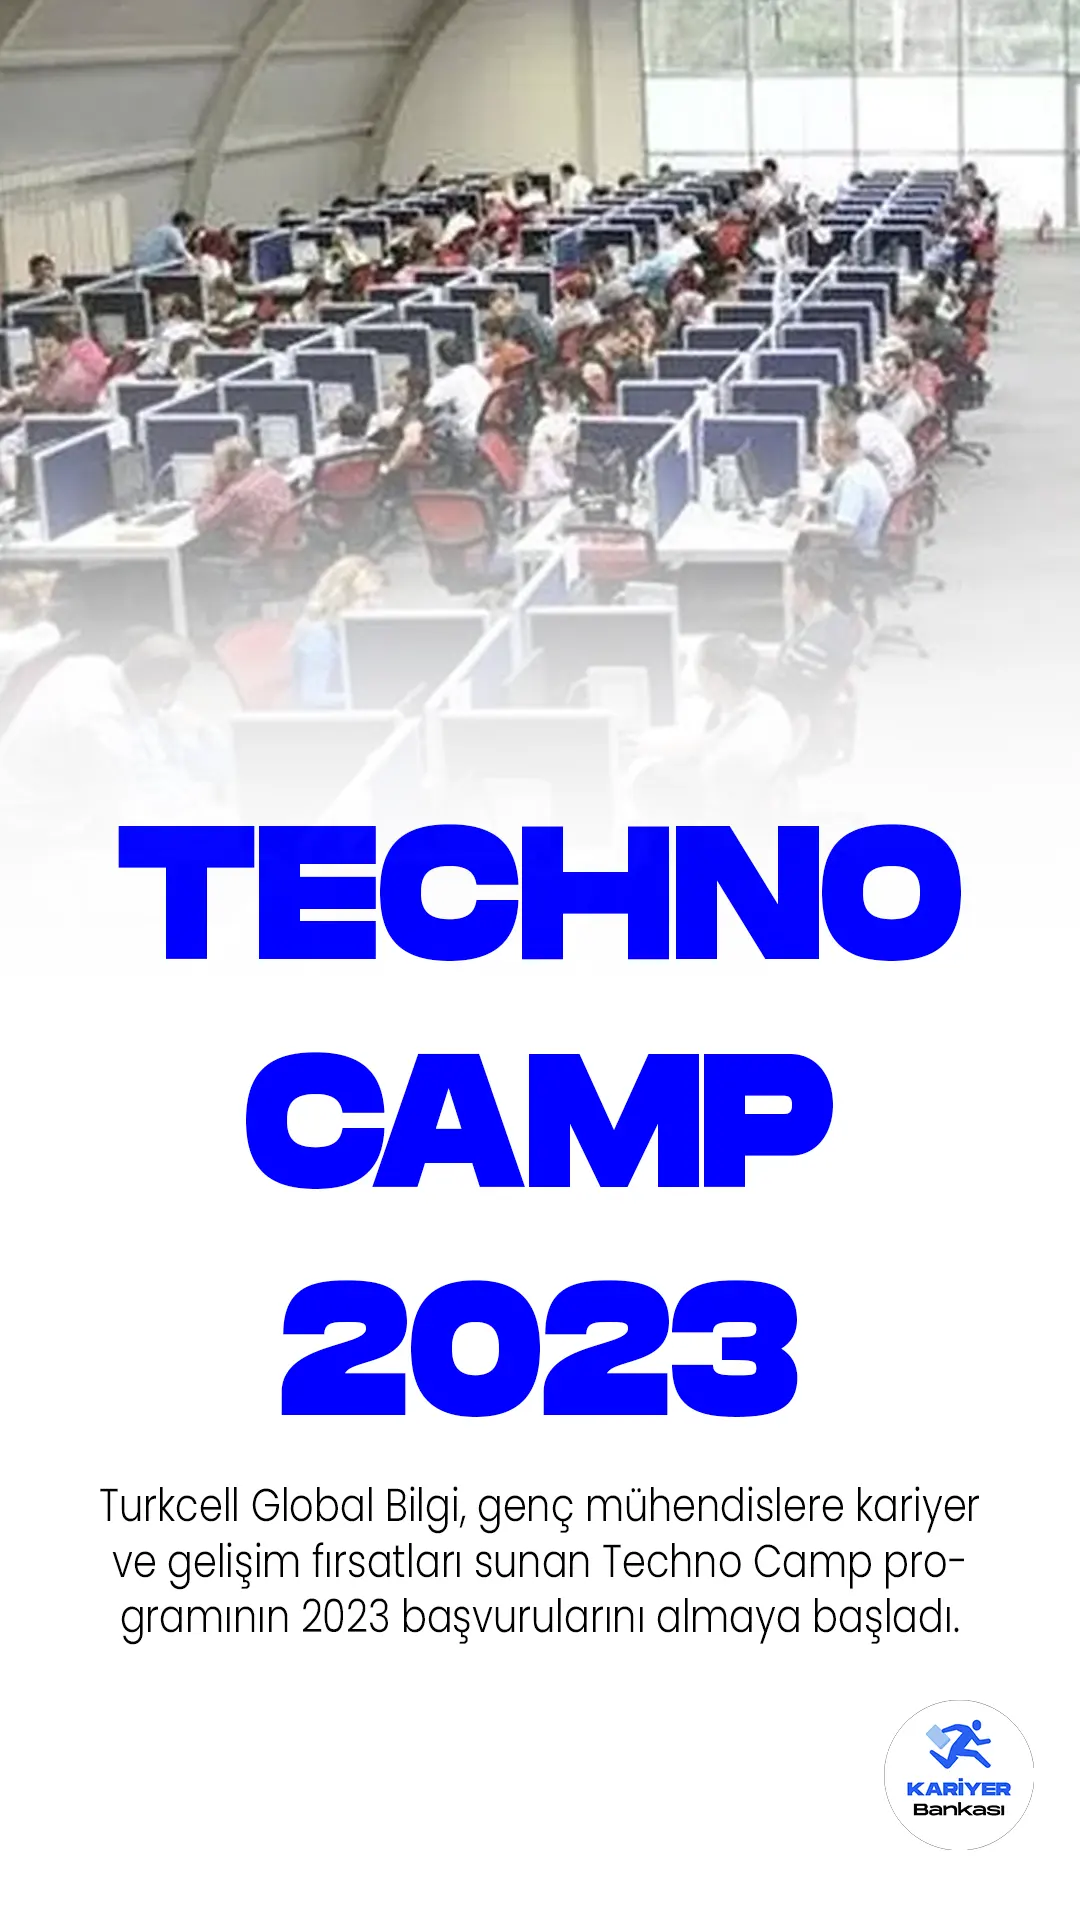 Turkcell Global Bilgi, genç mühendislere kariyer ve gelişim fırsatları sunan Techno Camp programının 2023 başvurularını almaya başladı. Programı başarıyla tamamlayan mühendisler, Turkcell Global Bilgi bünyesinde istihdam edilecek.